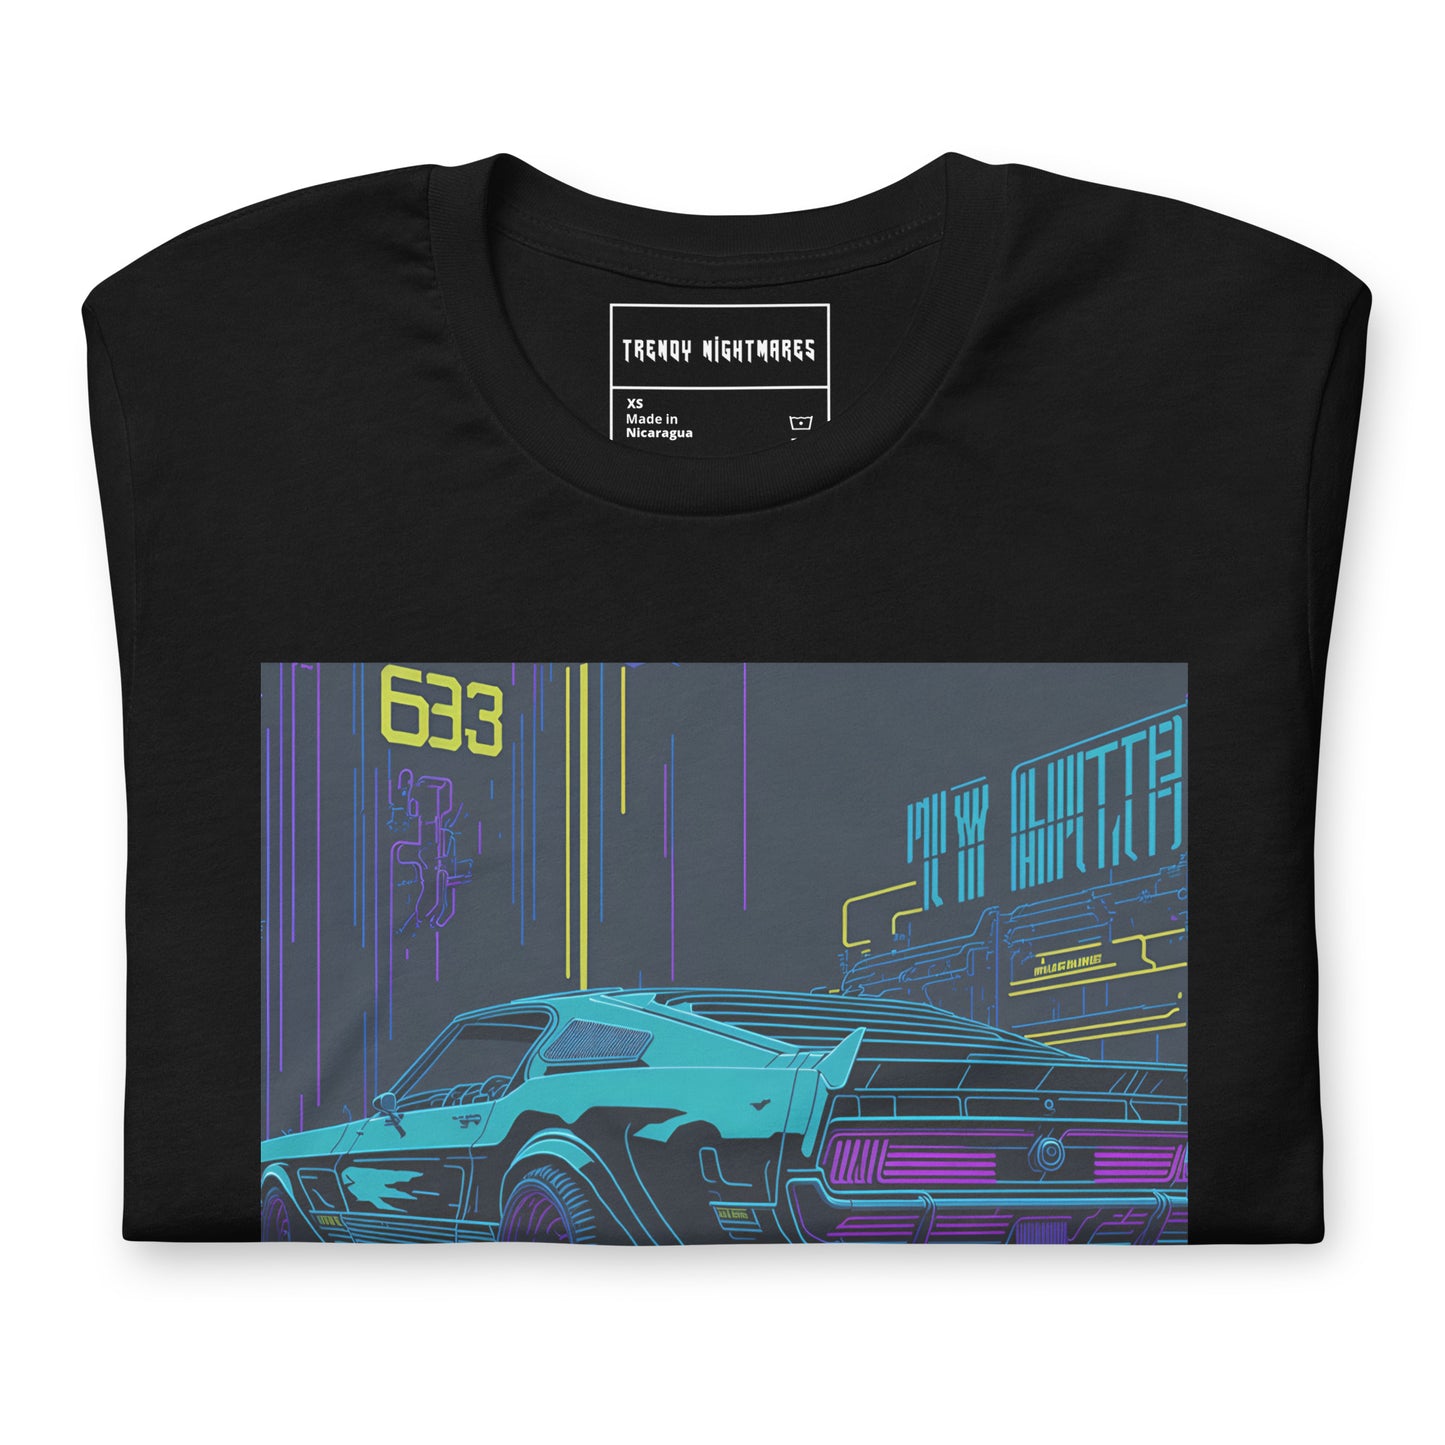 Cyberpunk Car Unisex t-shirt